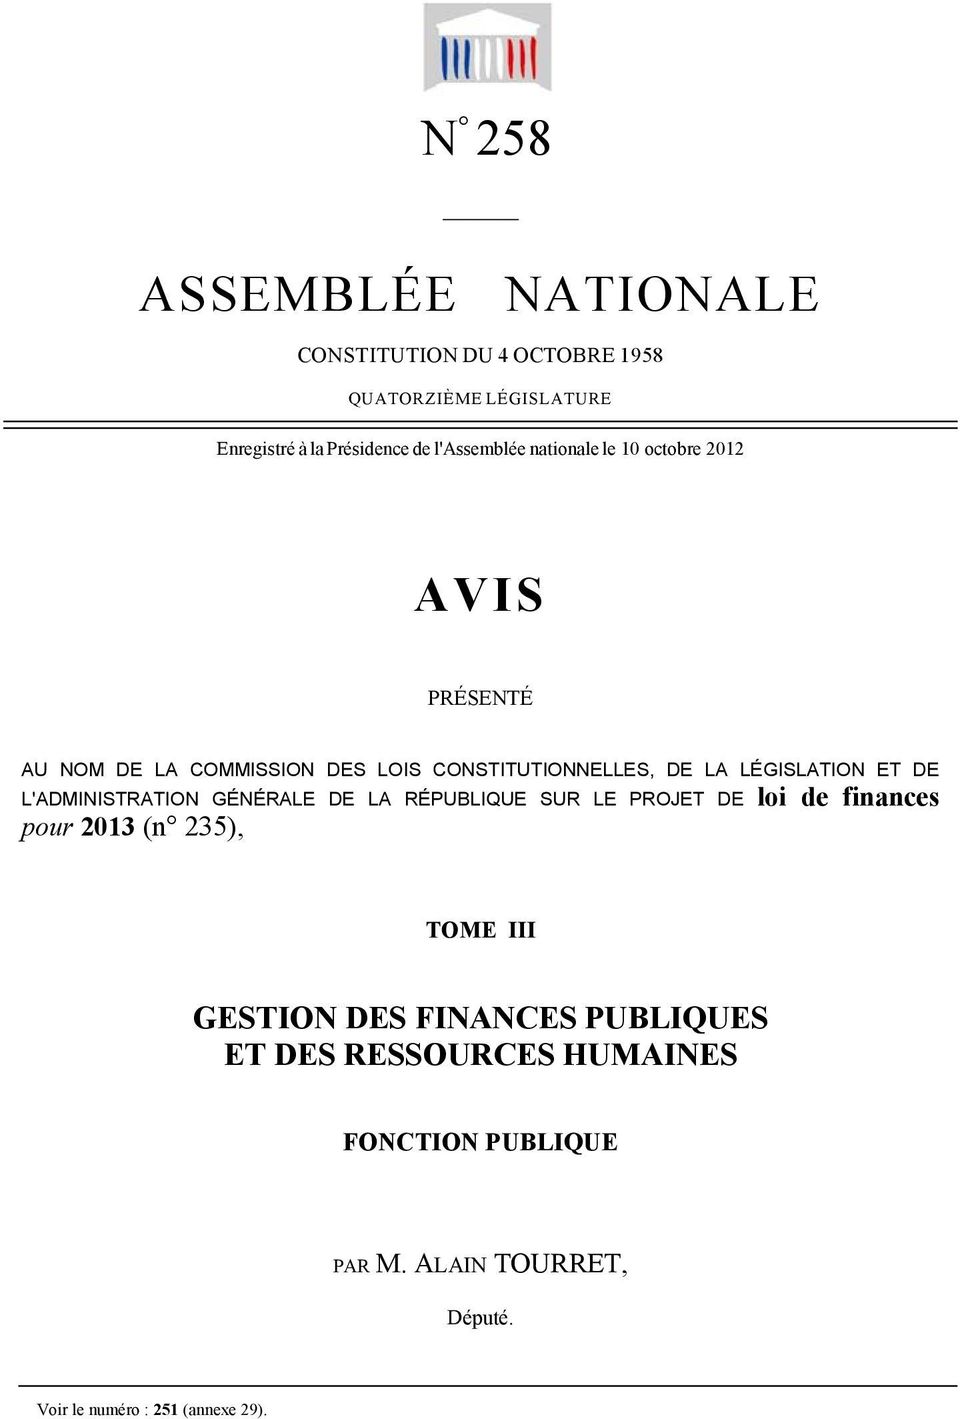 LÉGISLATION ET DE L'ADMINISTRATION GÉNÉRALE DE LA RÉPUBLIQUE SUR LE PROJET DE loi de finances pour 2013 (n 235), TOME III